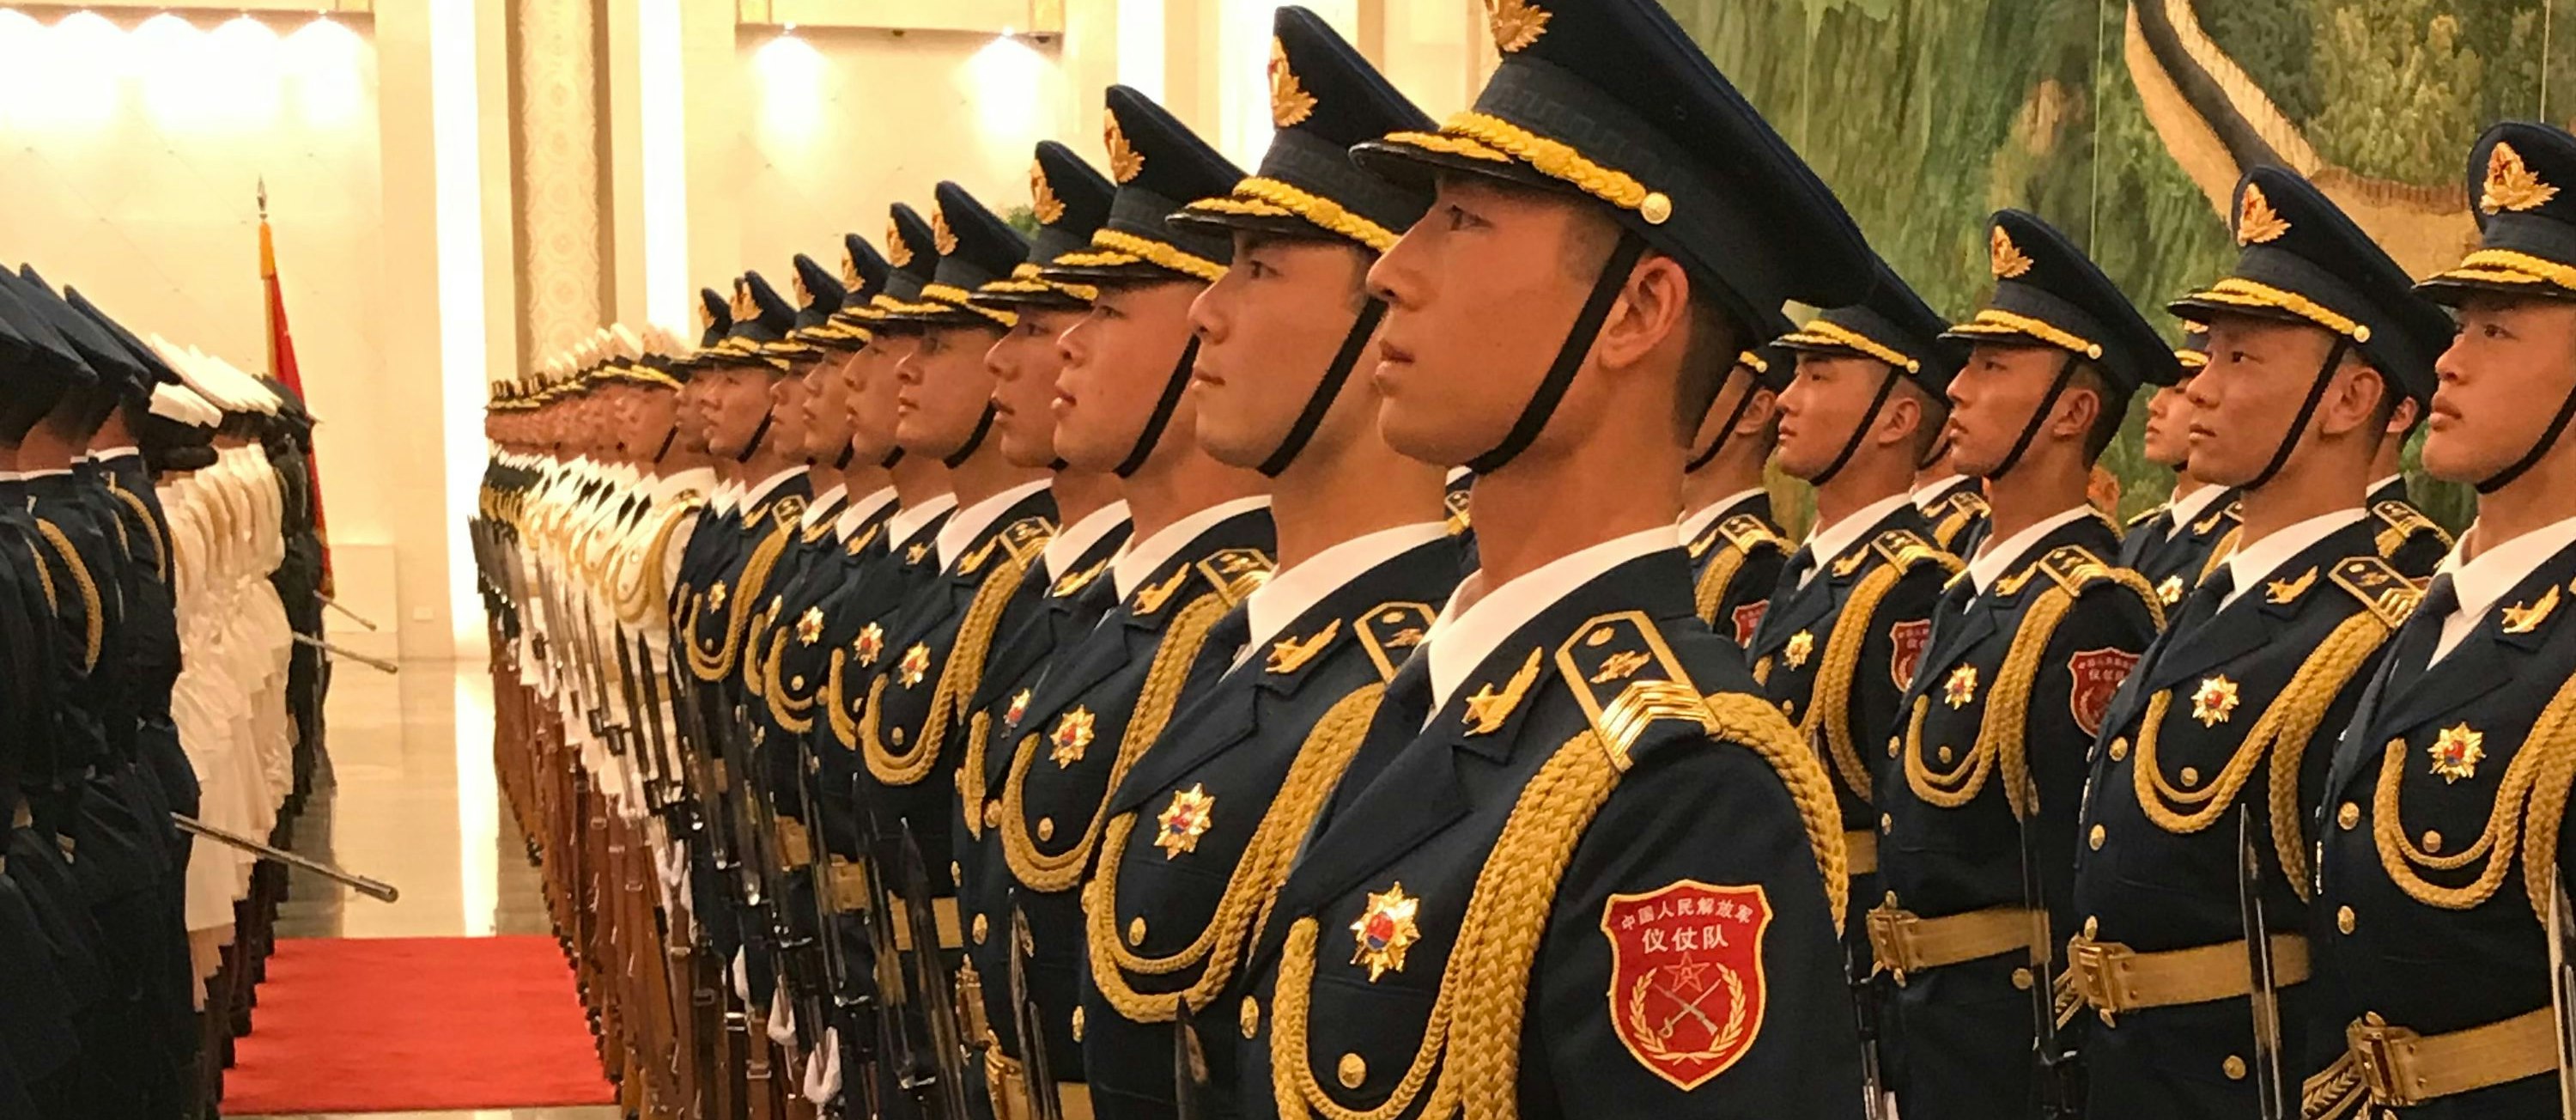 Zeremonie in der Großen Halle des Volkes in Peking, April 2018